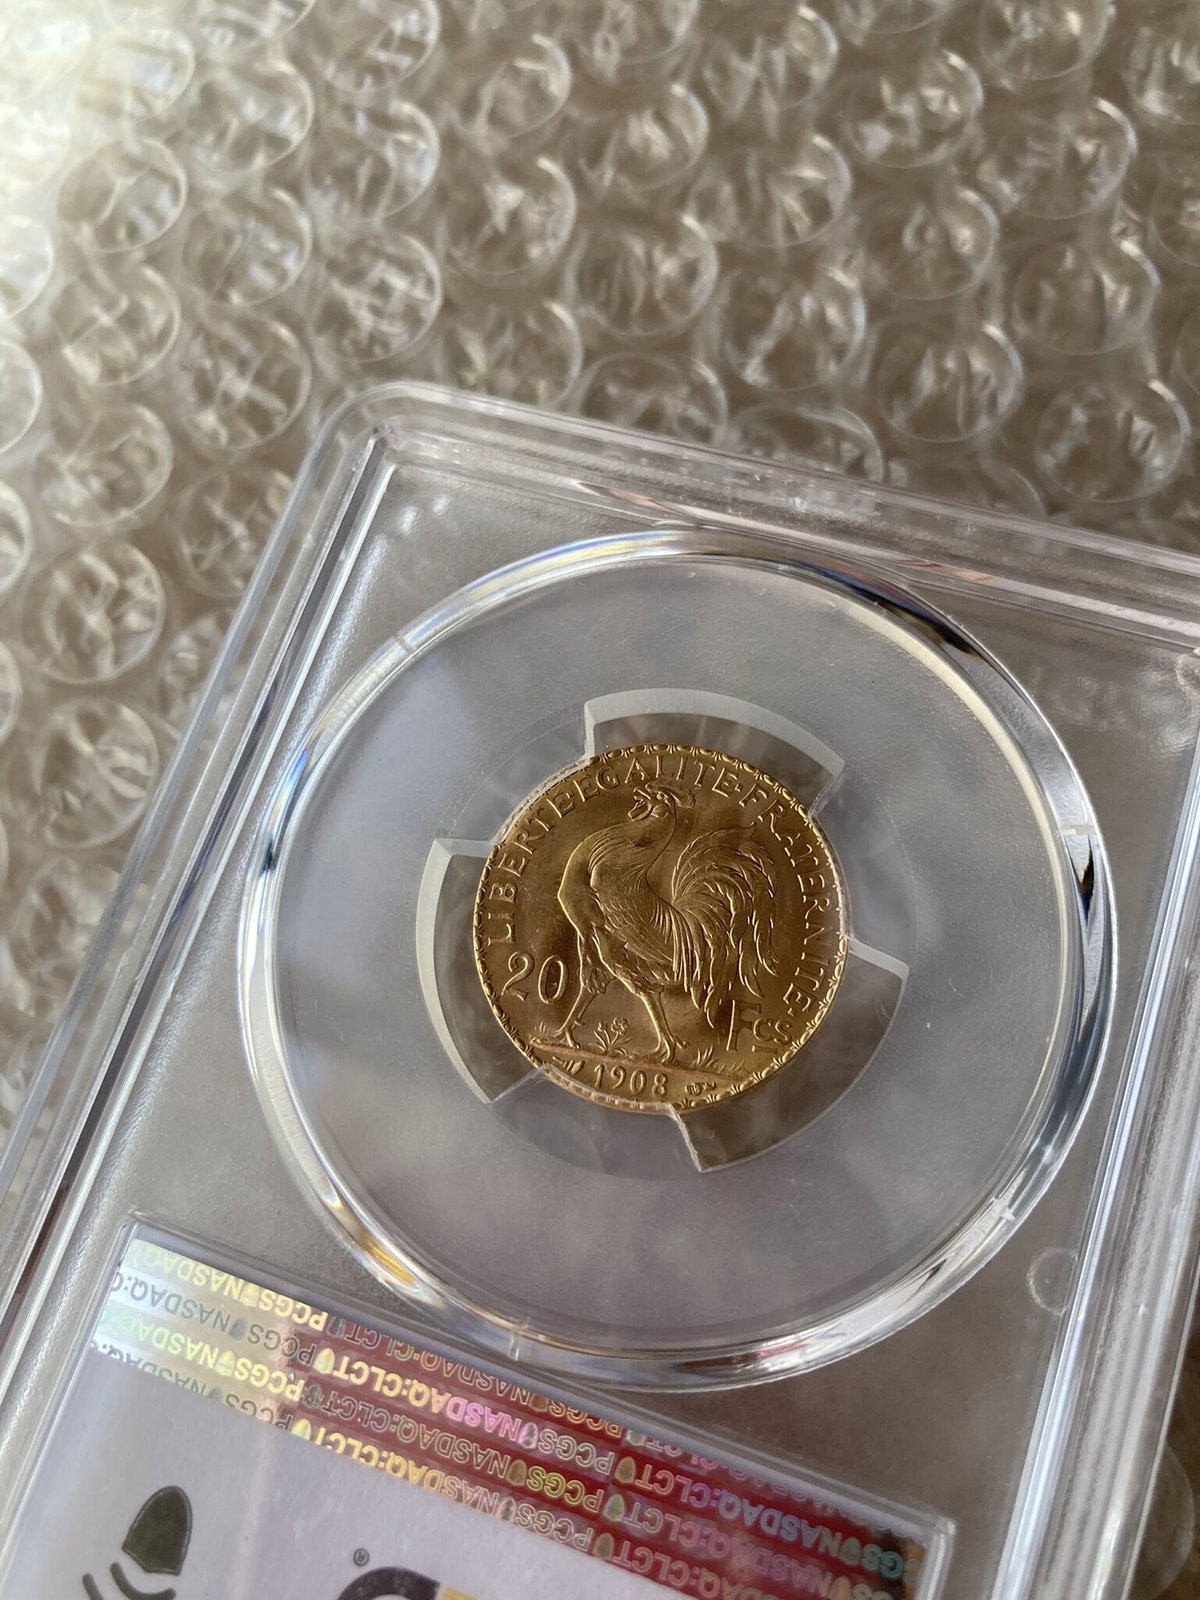 1908年・PCGS MS66+】フランス 20フラン ルースター金貨 ゴールド アン